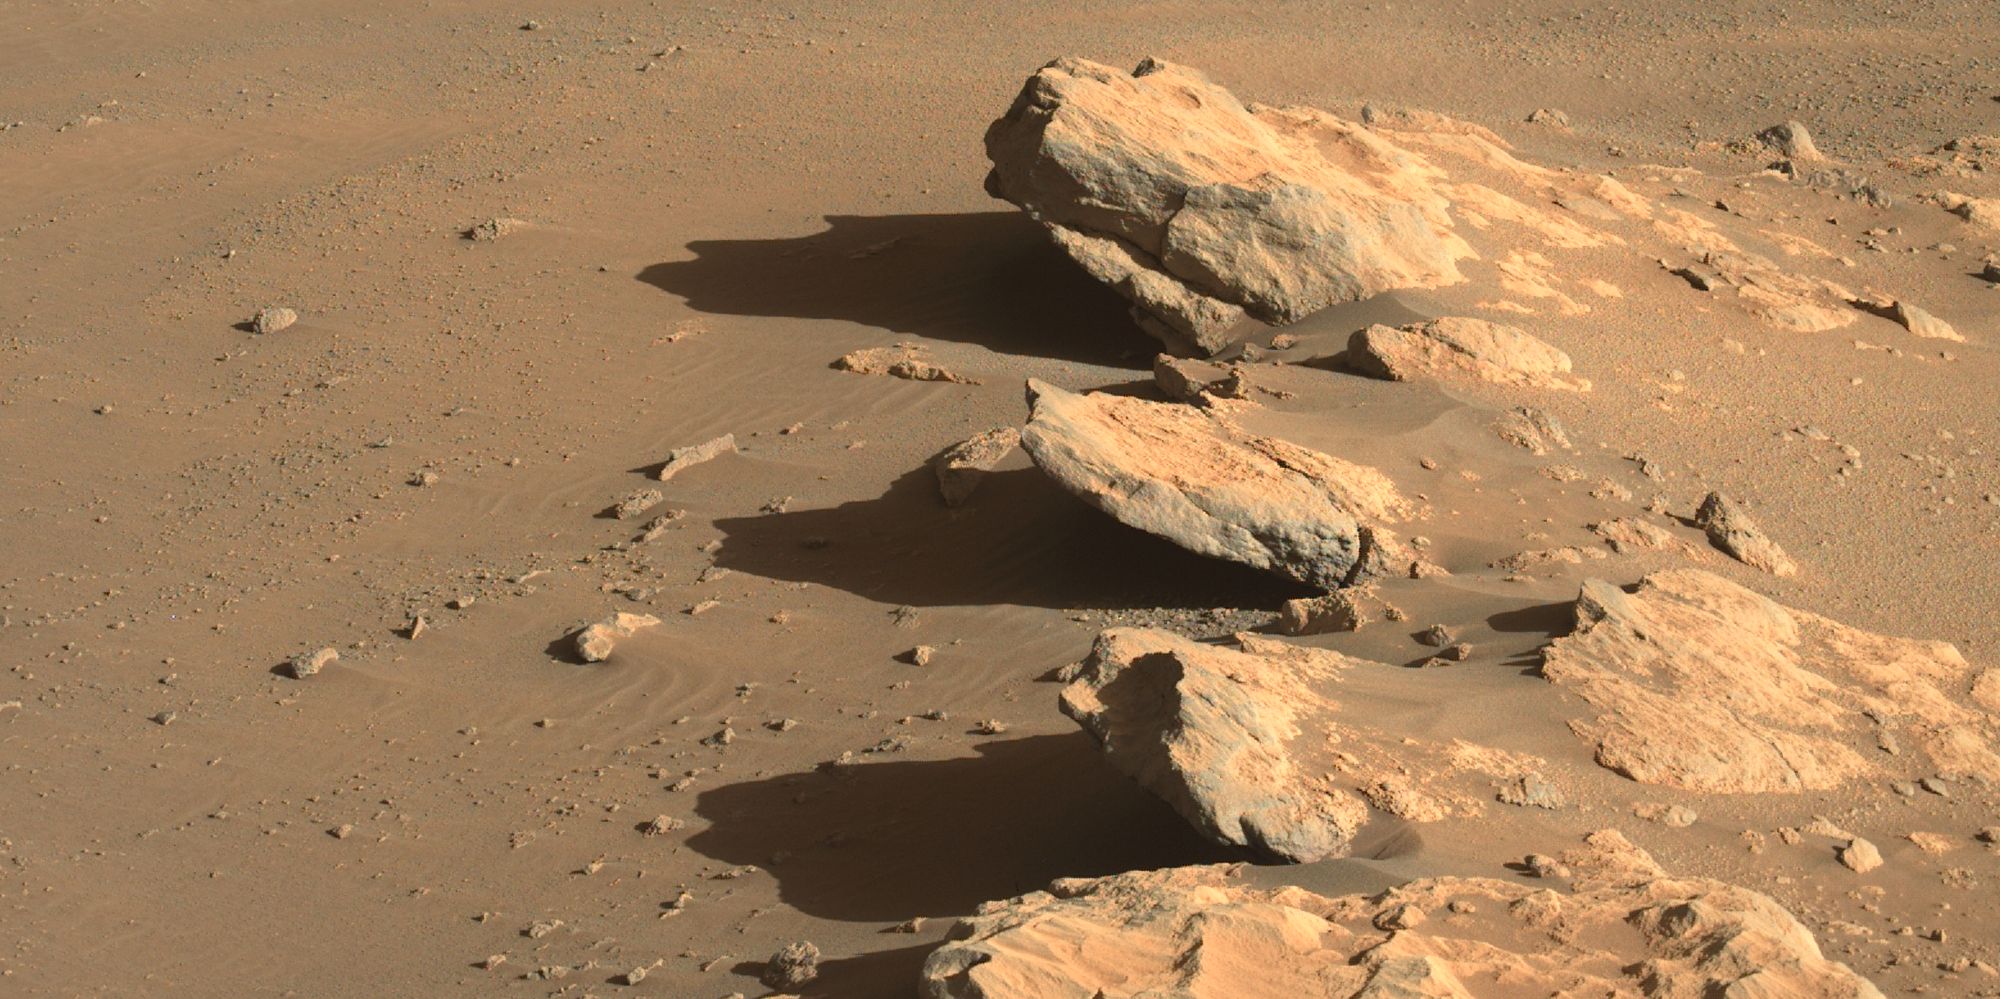 Nueva foto de perseverancia muestra tres rocas 'tomando el sol' en Marte